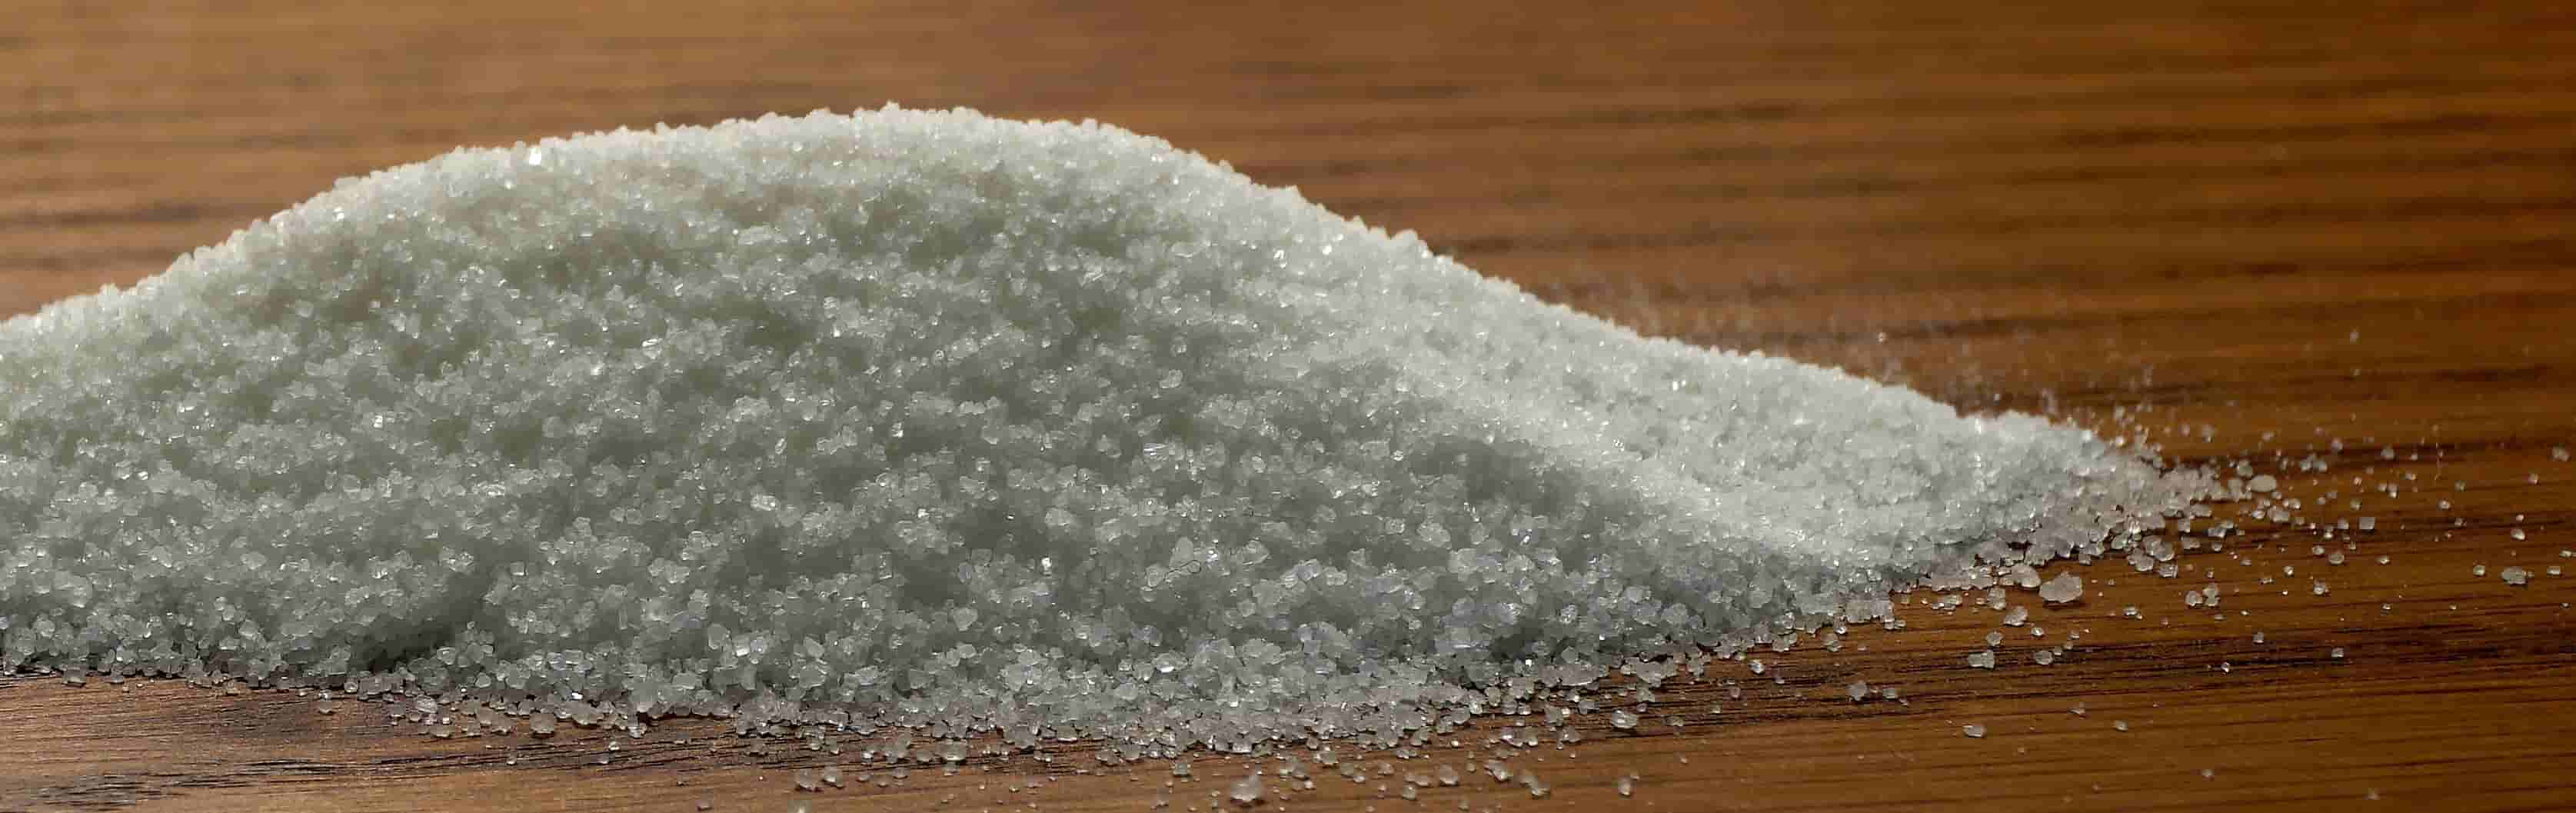 Zuckeralkohol Erythrit (Erythritol) - Zuckerkristalle auf einem Tisch